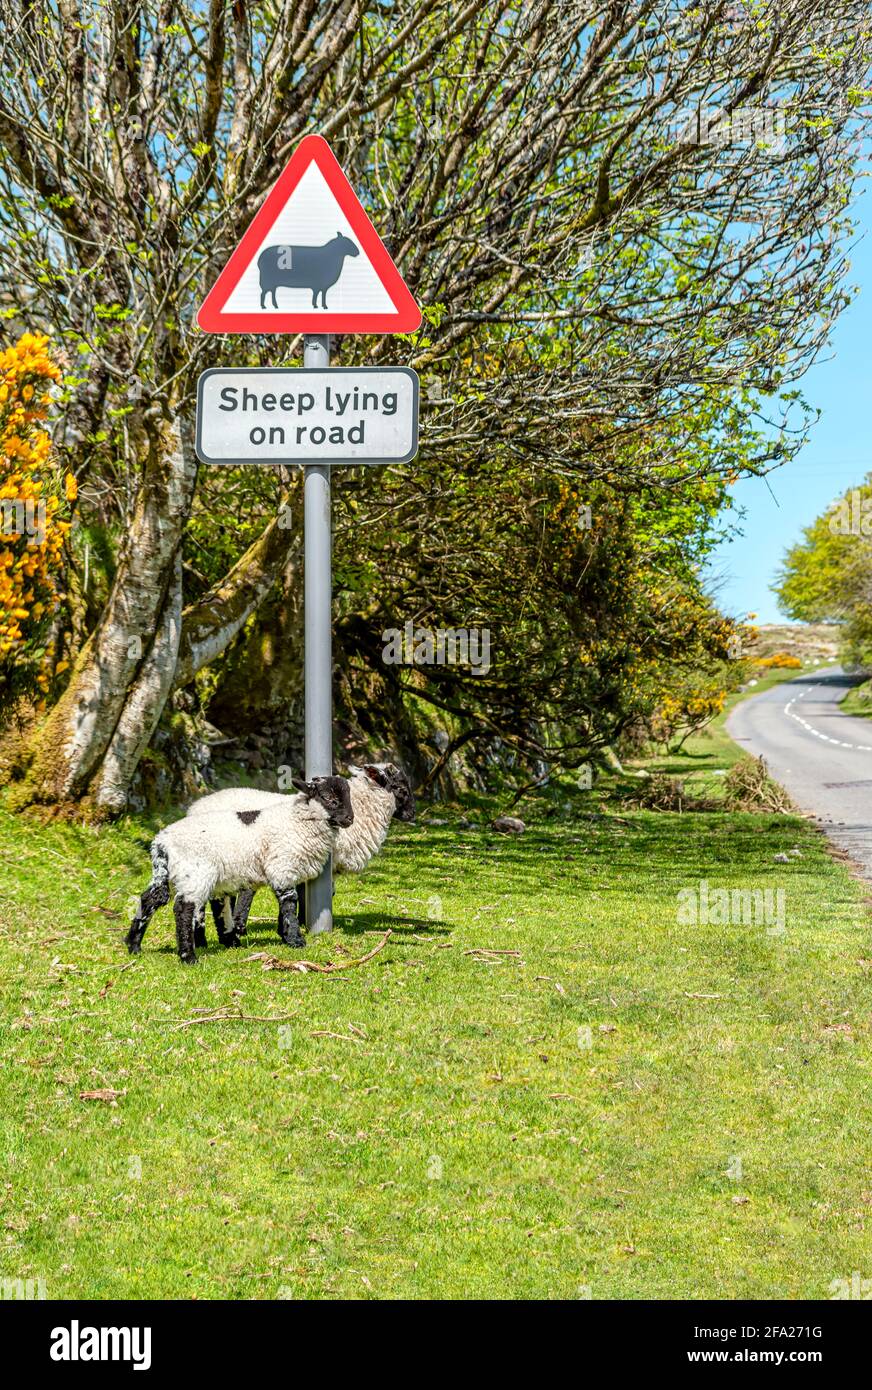 Blackface Sheep debout sous un panneau de rue avertissant des moutons dans la rue, parc national de Dartmoor, Devon, Angleterre, Royaume-Uni Banque D'Images